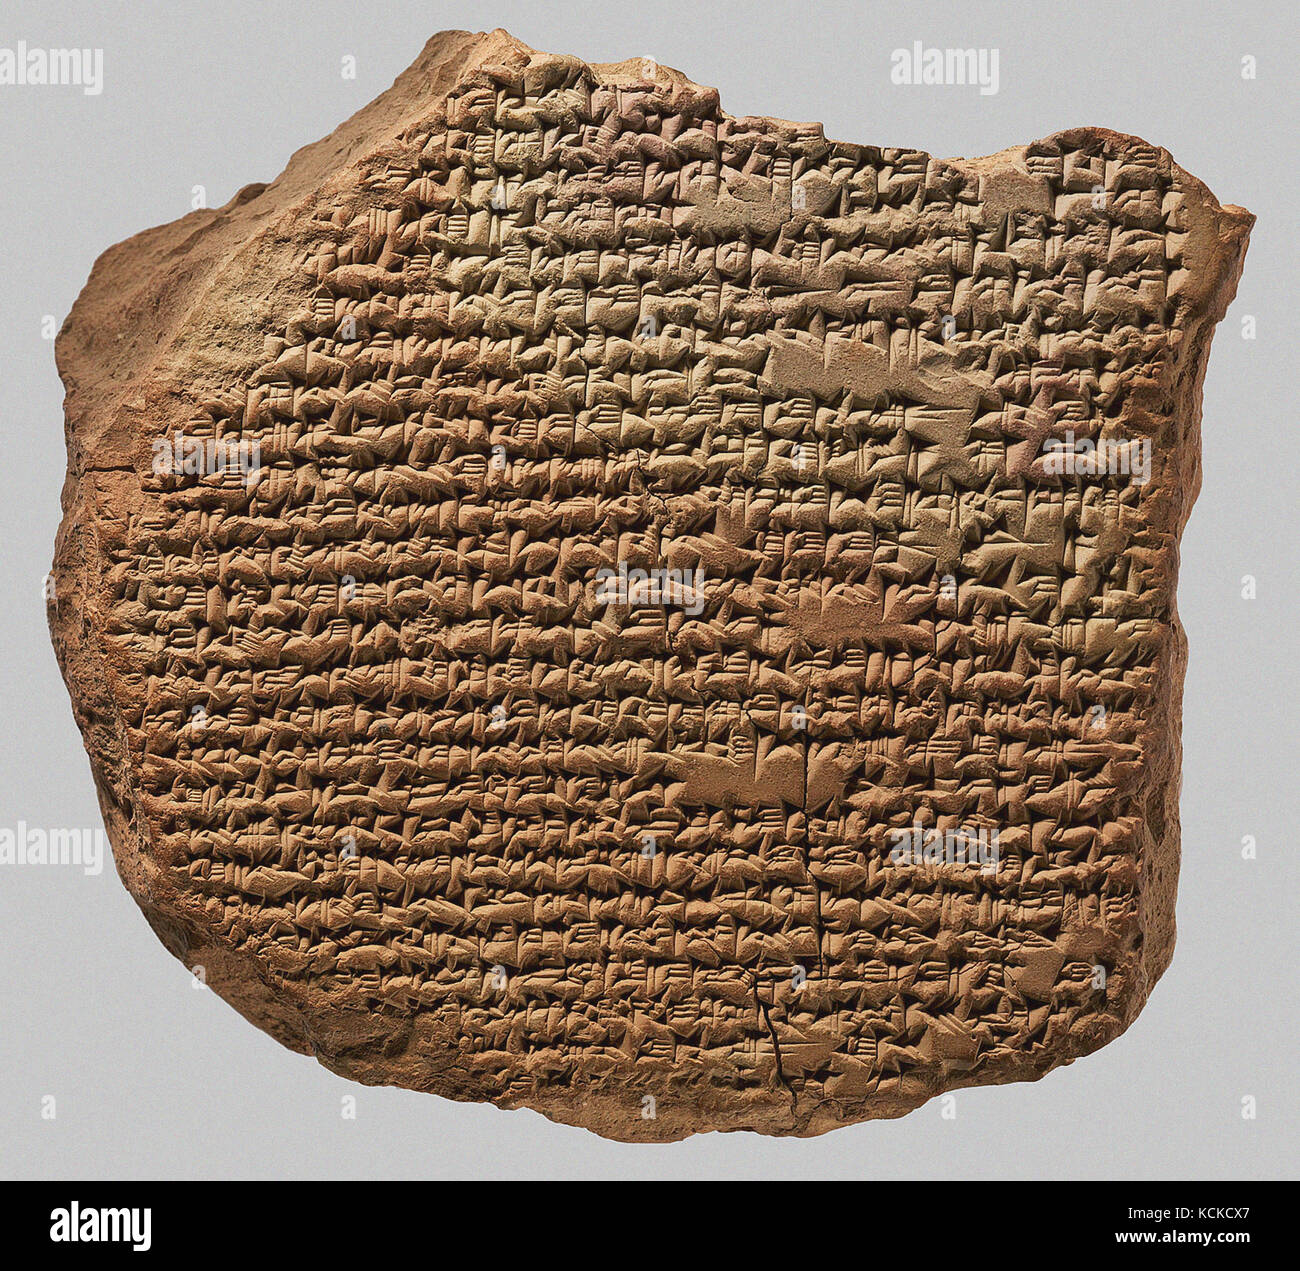 6080. inno a marduk, babilonese tavoletta cuneiforme dating c. 1000 BC. Marduk fu una delle divinità principali del Pantheon babilonese degli dèi. Foto Stock